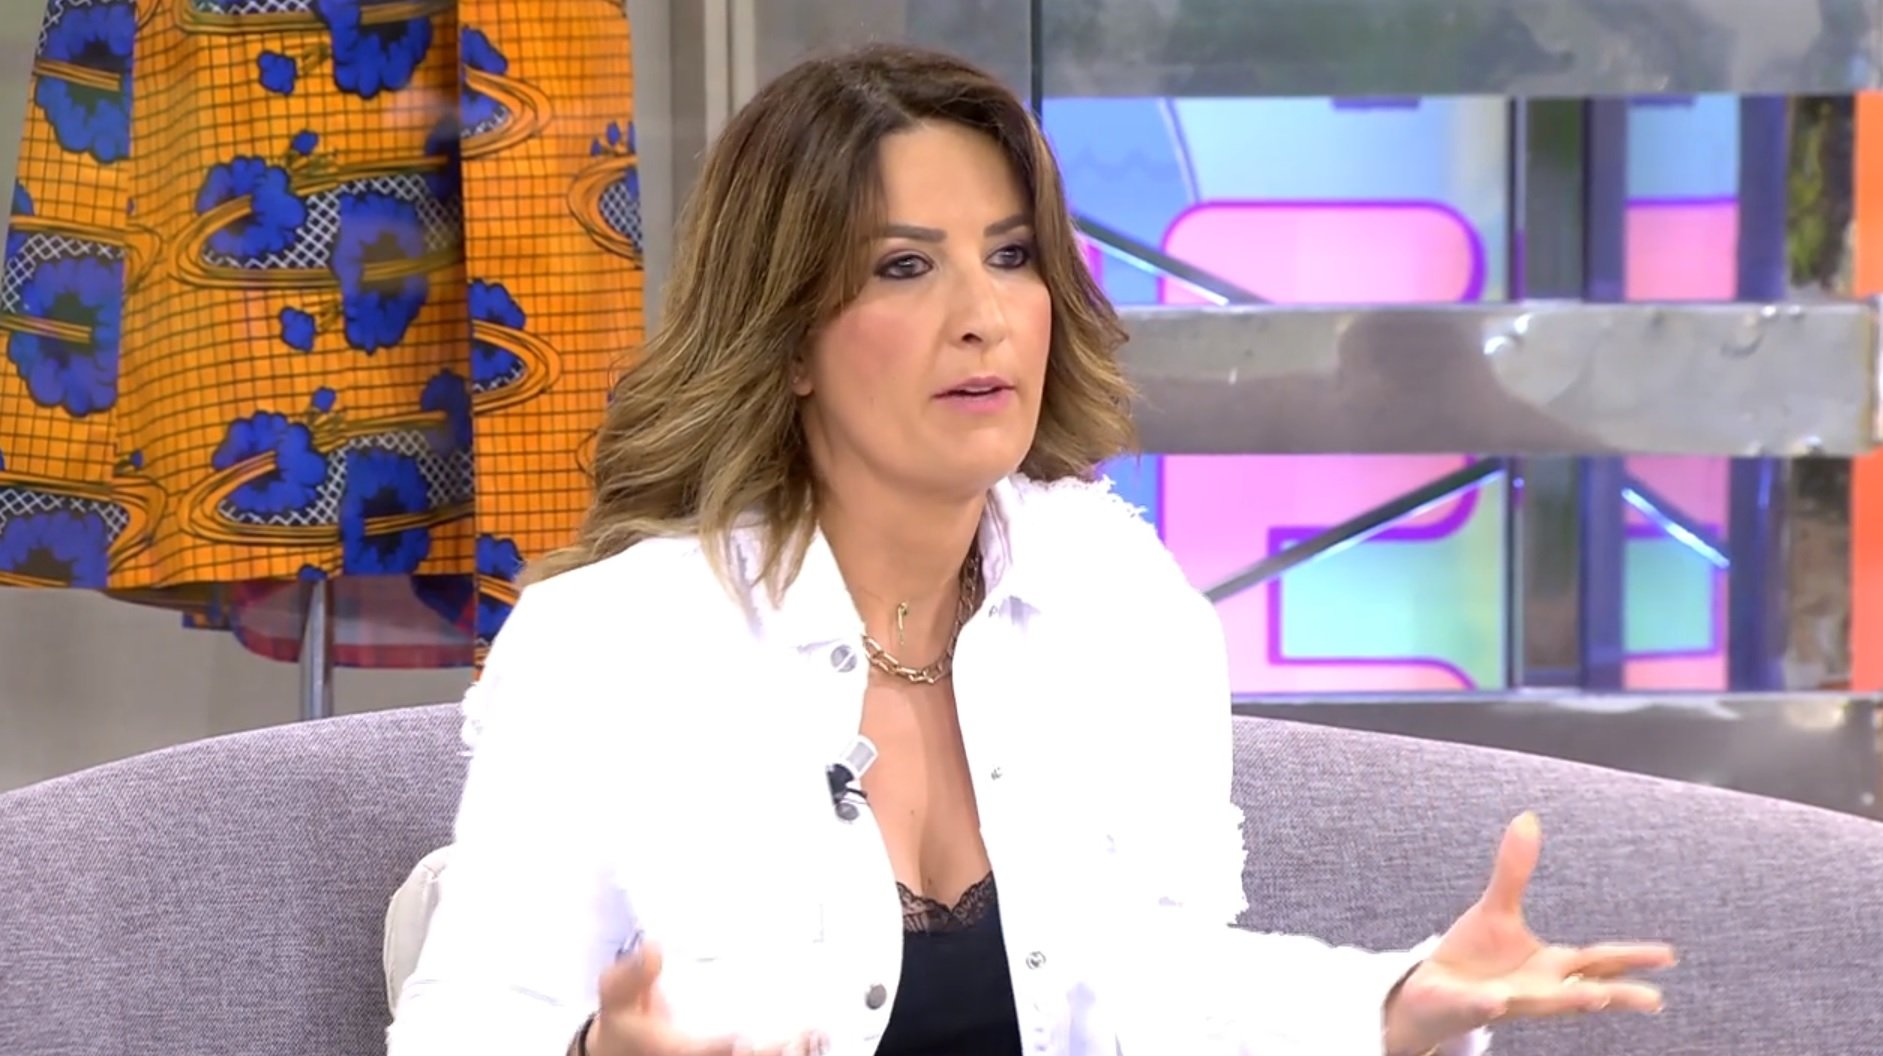 La indepe Laura Fa amb samarreta d'Espanya a T5 i la insulten: "quin fàstic fas"